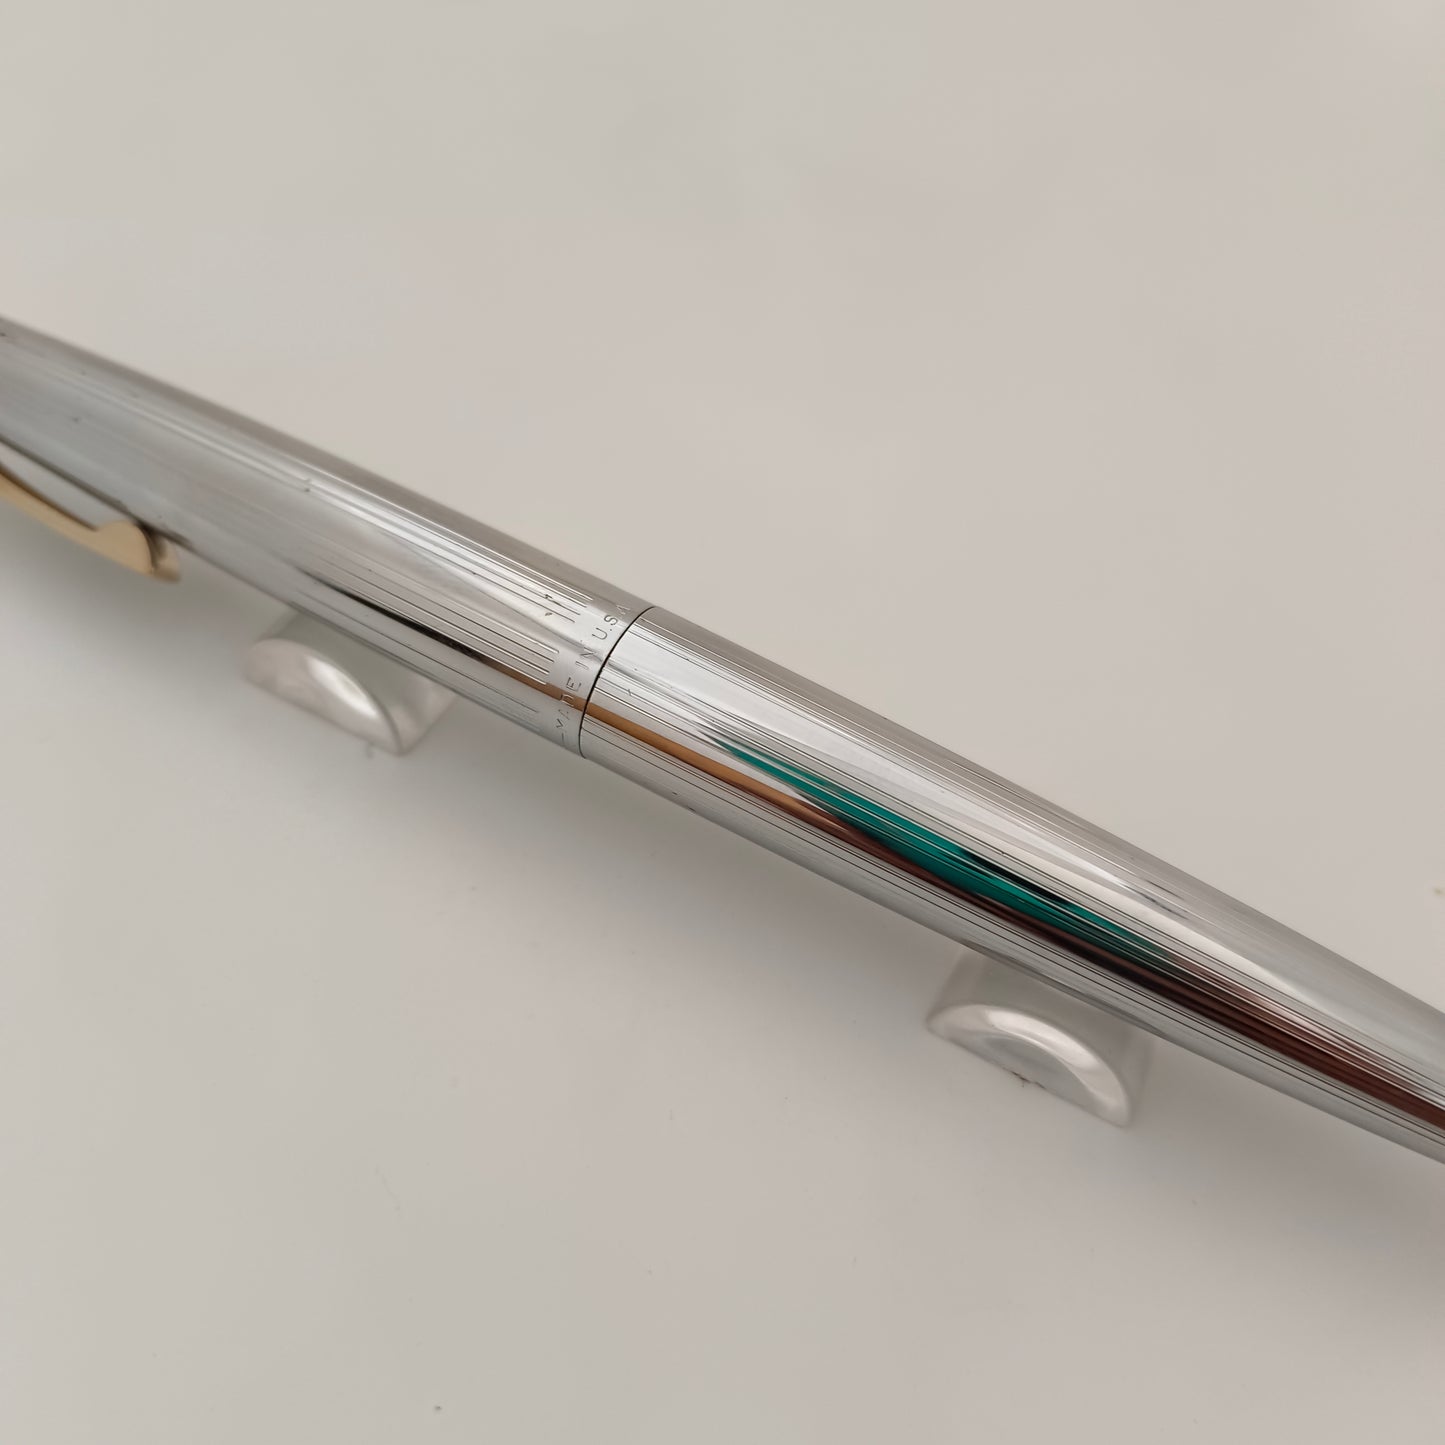 Sheaffer stylist stainless steel fountain pen